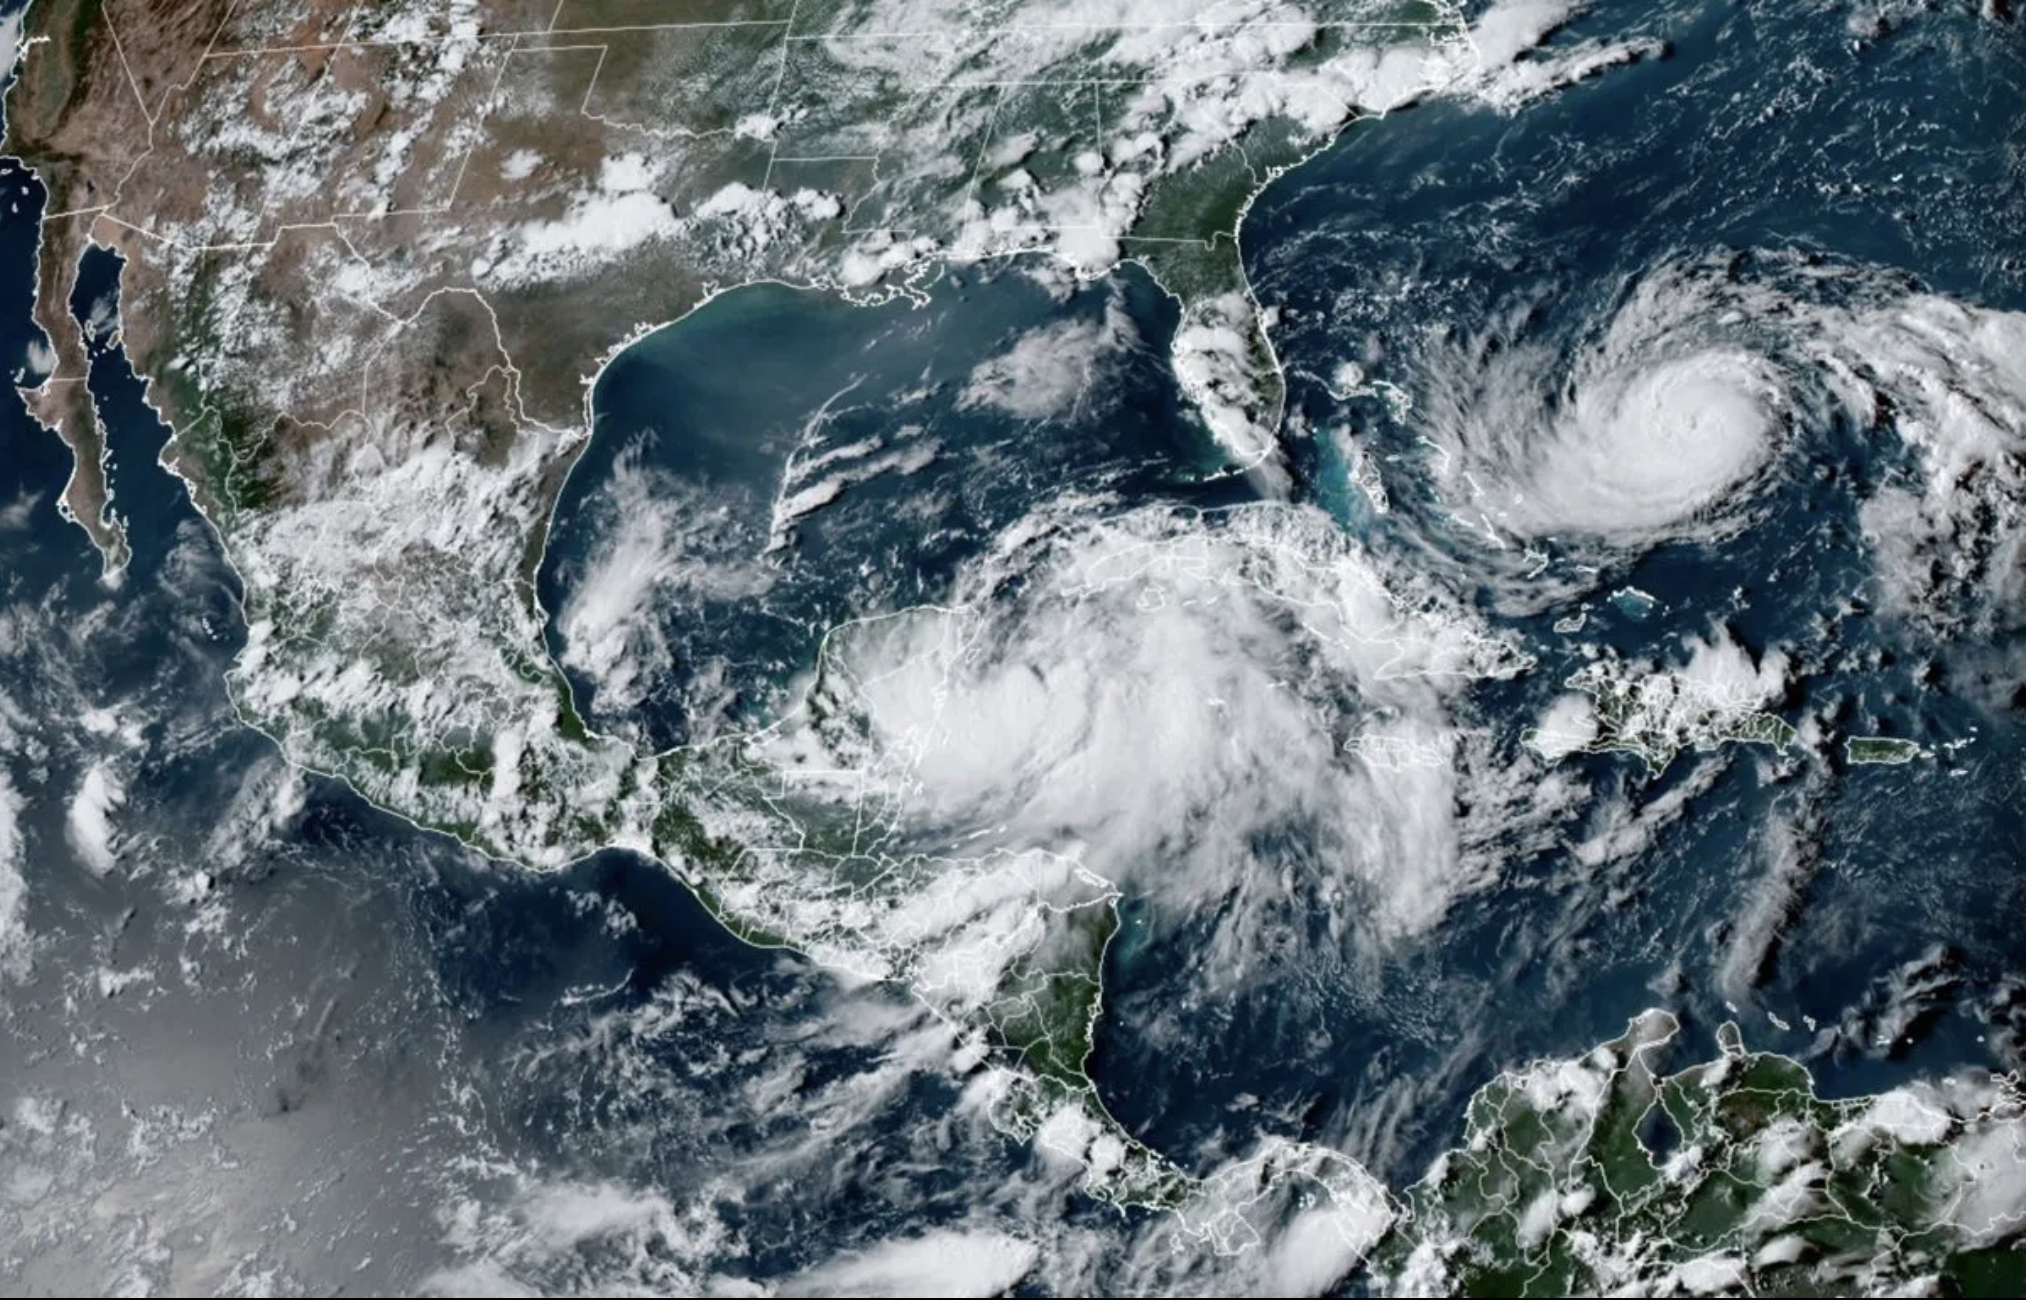     La tempête tropicale Idalia, qui devrait devenir un ouragan, s'approche des côtes de Cuba

